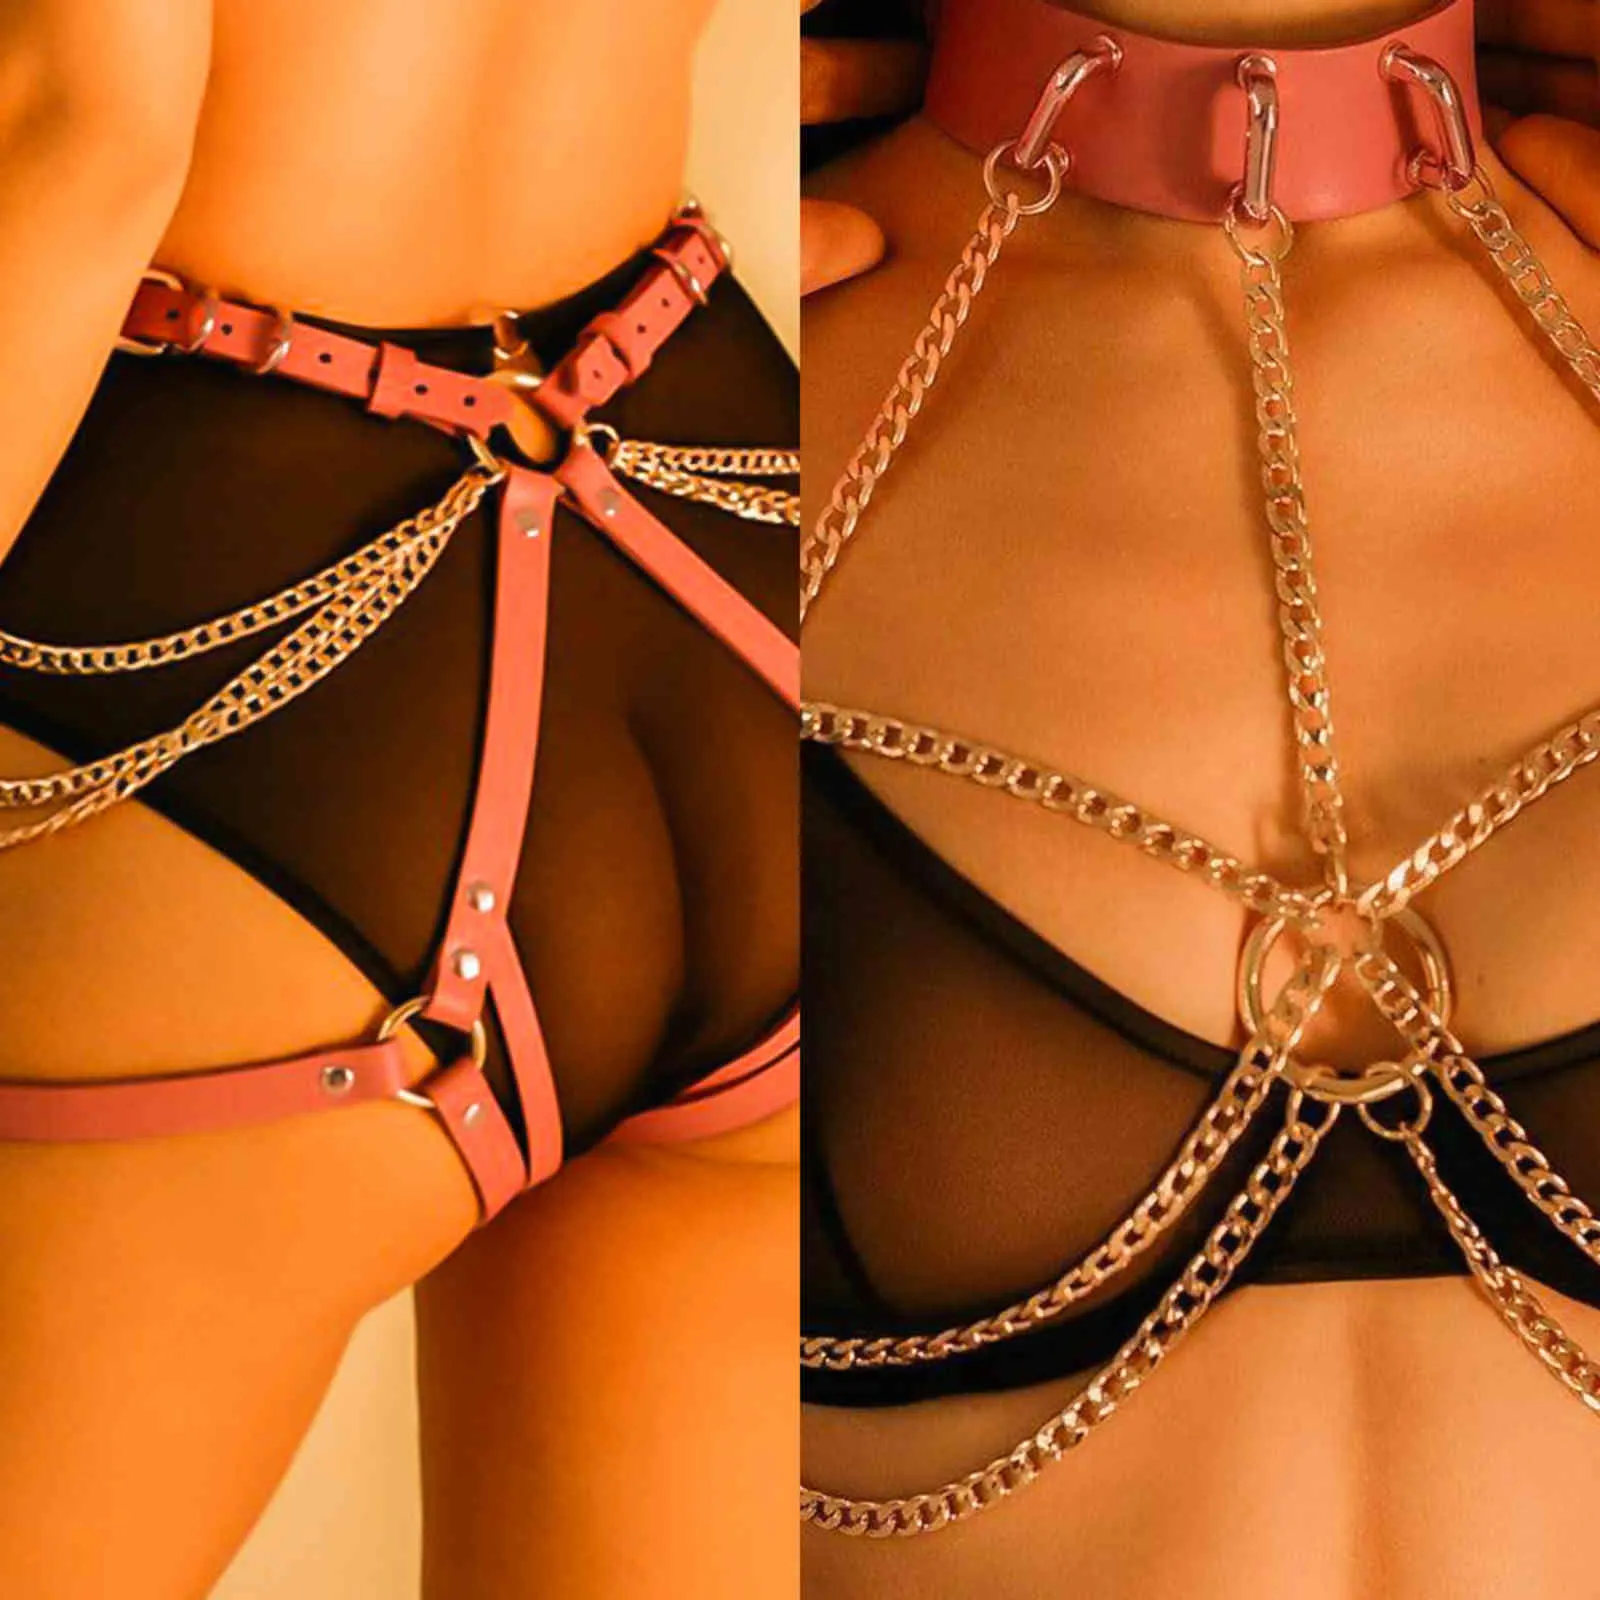 Bondages Hot SM Sexspielzeug für Frauen Paare Bondage Gear Erotik Goldkette Leder Fetischgürtel Sexy Bdsm Dessous Erwachsene Produkte 1122